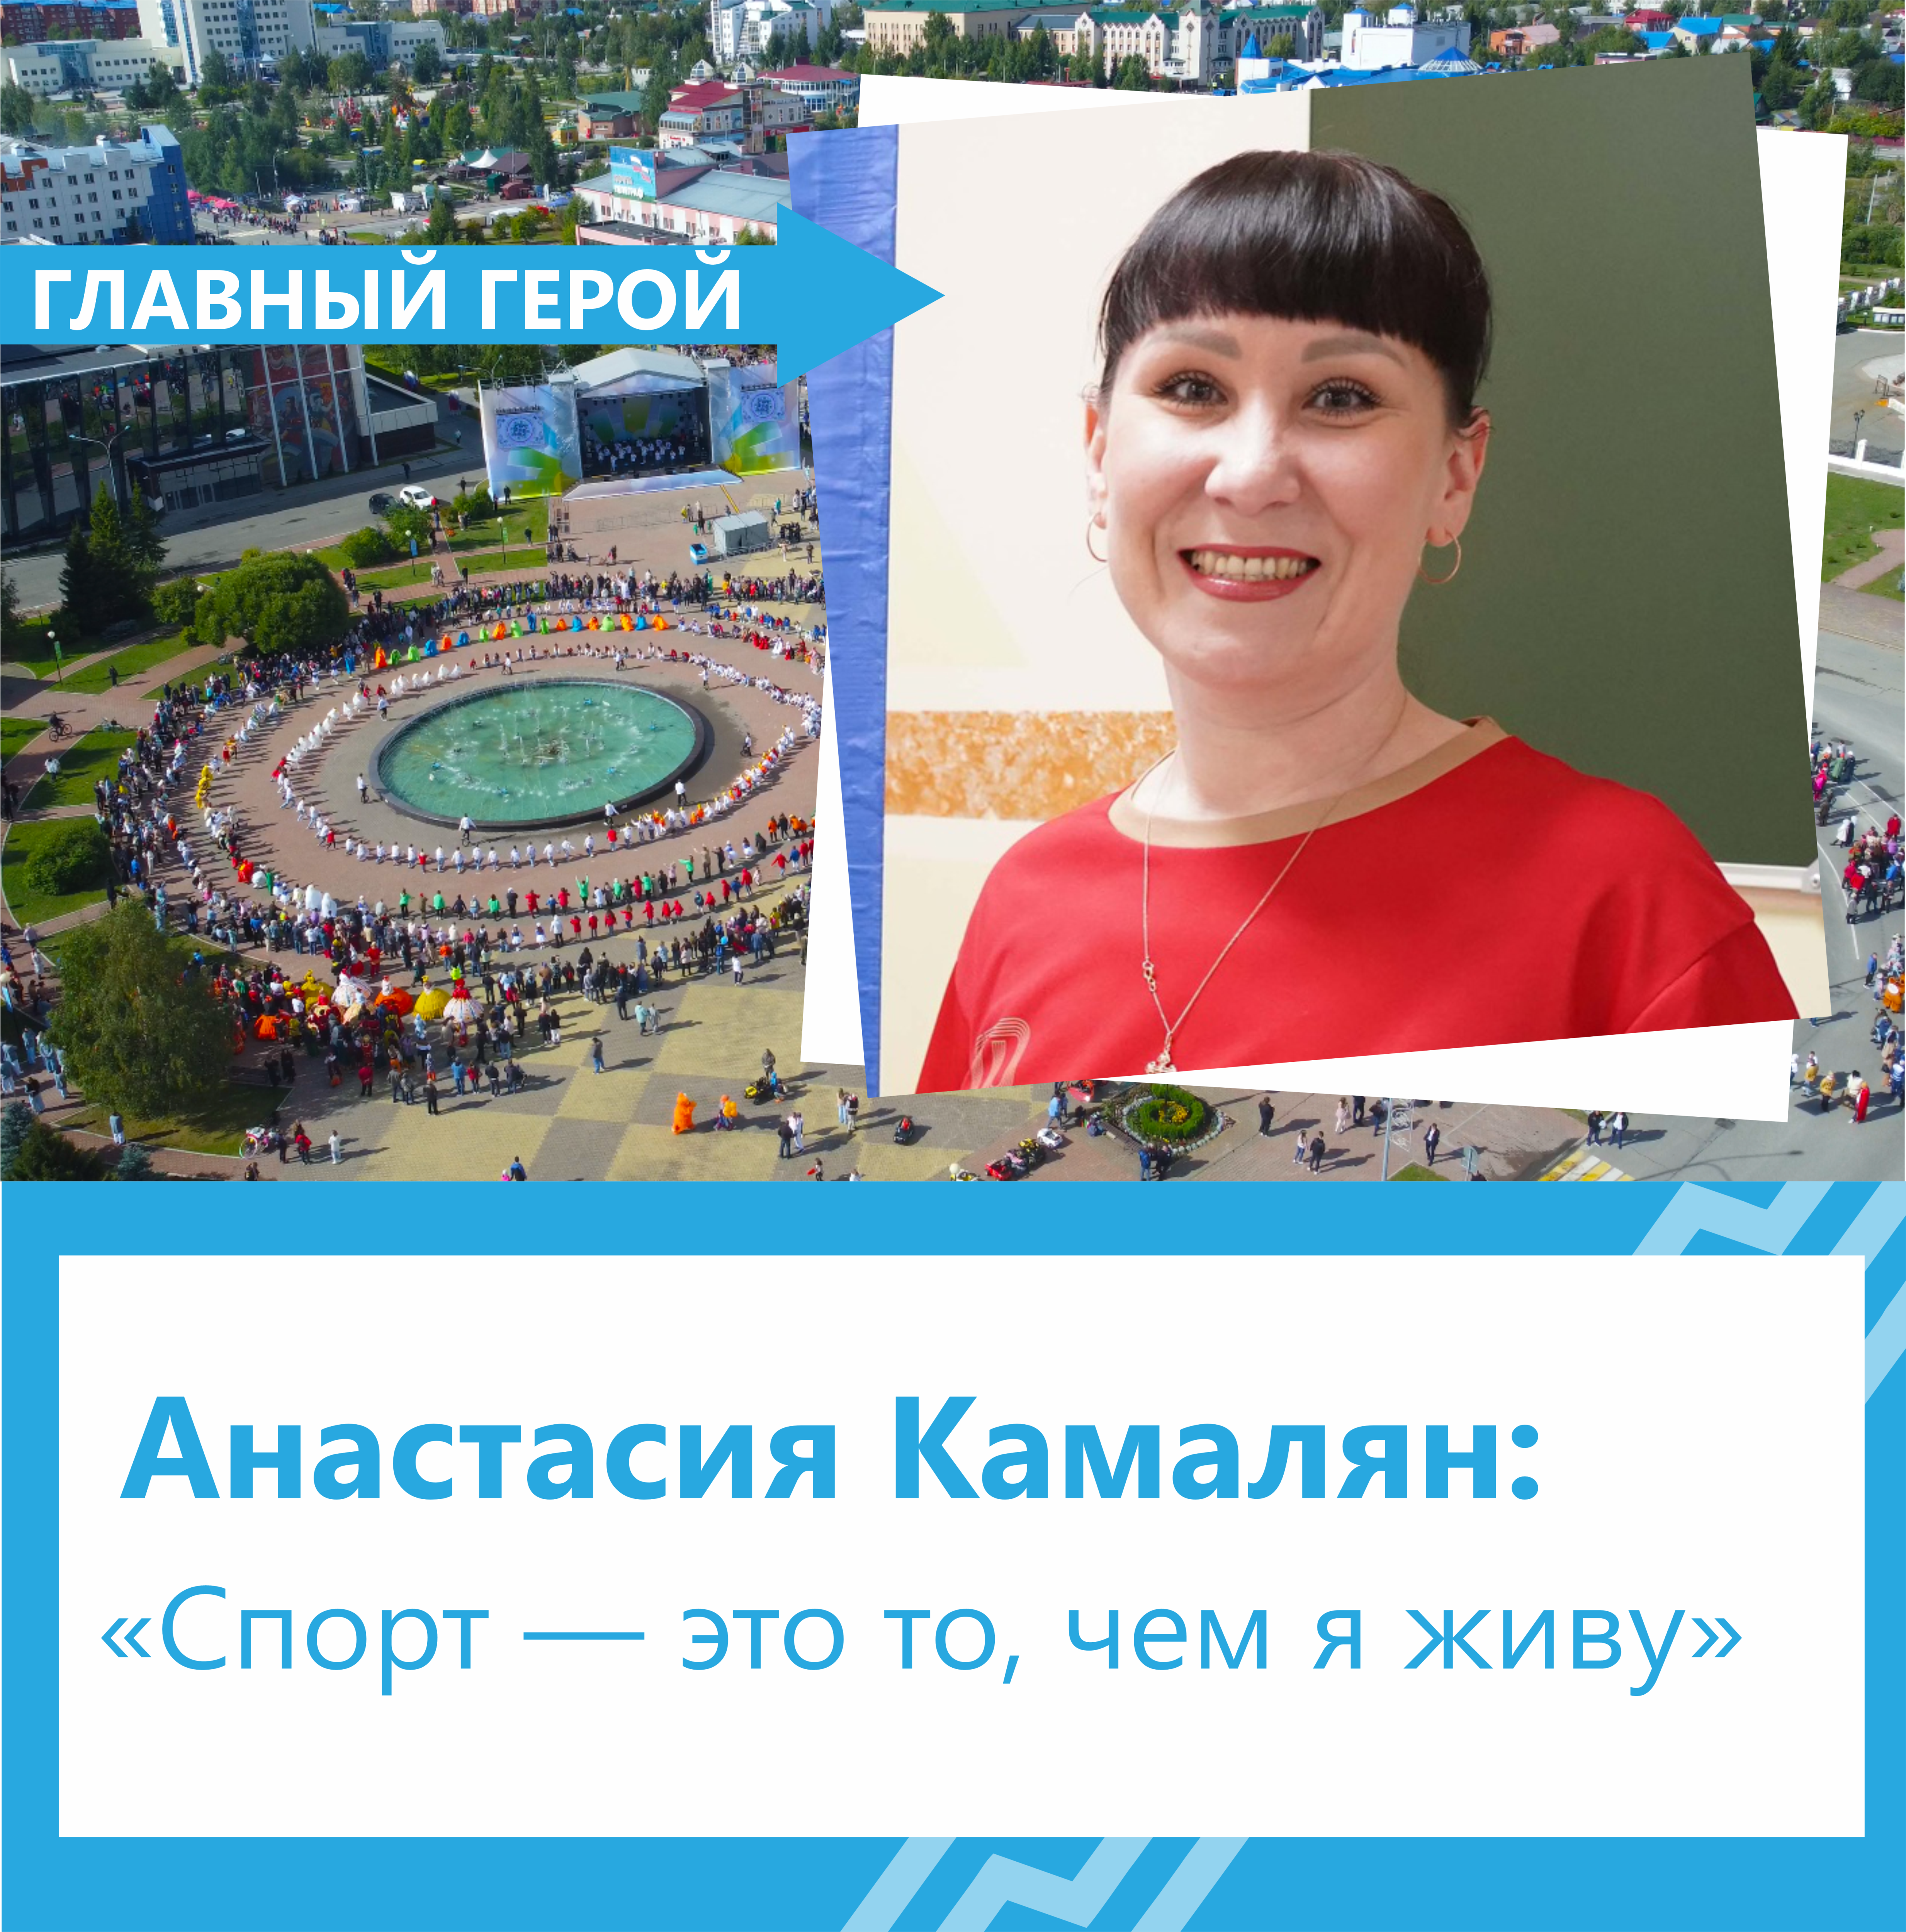 Анастасия Камалян: «Спорт — это то, чем я живу»